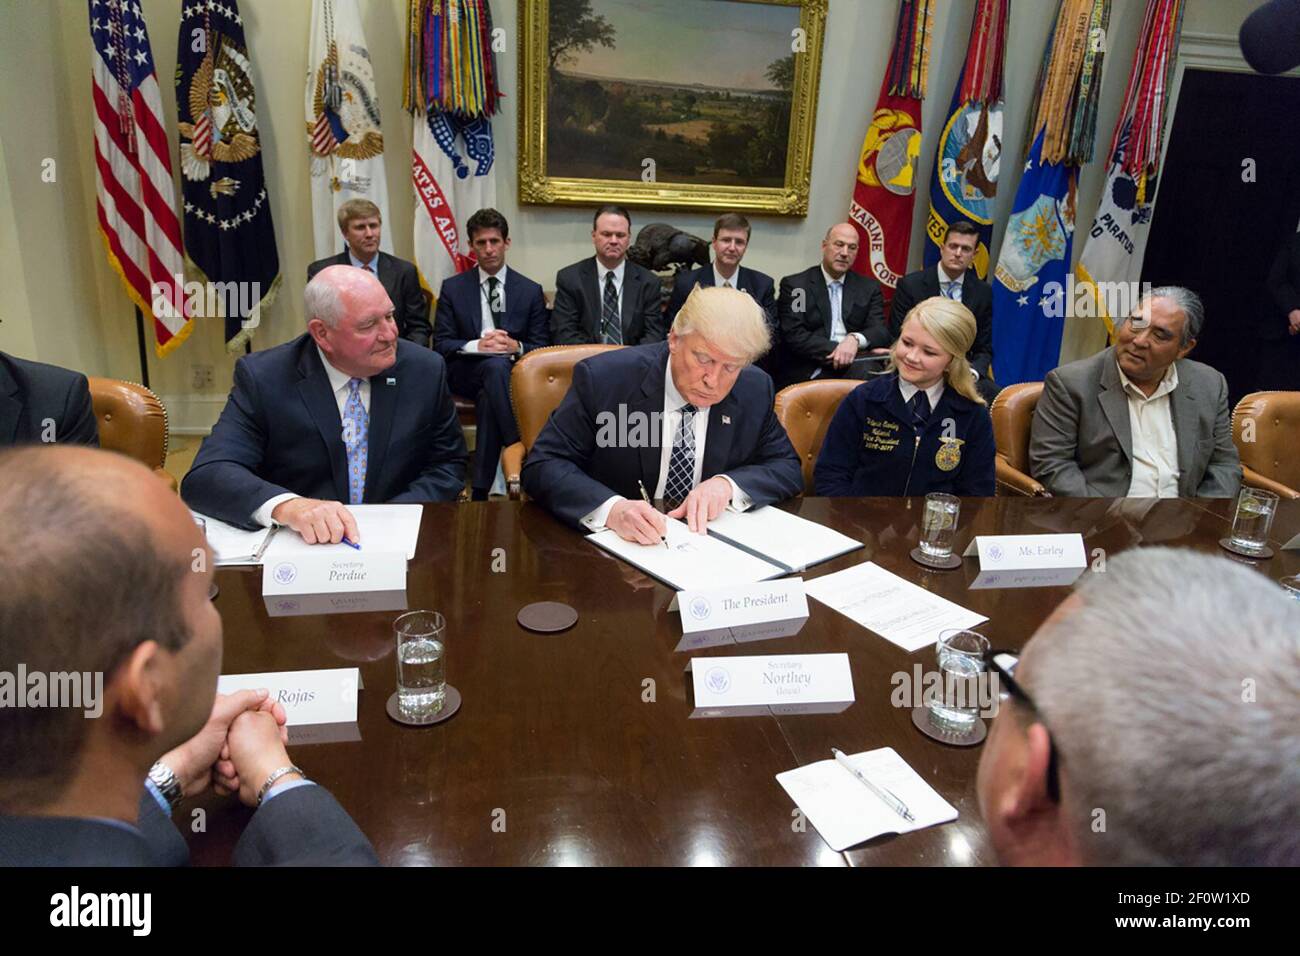 Il presidente Donald Trump firma un ordine esecutivo che promuove l'agricoltura e la prosperità rurale in America durante una tavola rotonda con gli agricoltori e i commissari agricoli nella Sala Roosevelt della Casa Bianca a Washington D.C. martedì 25 2017 aprile. Foto Stock